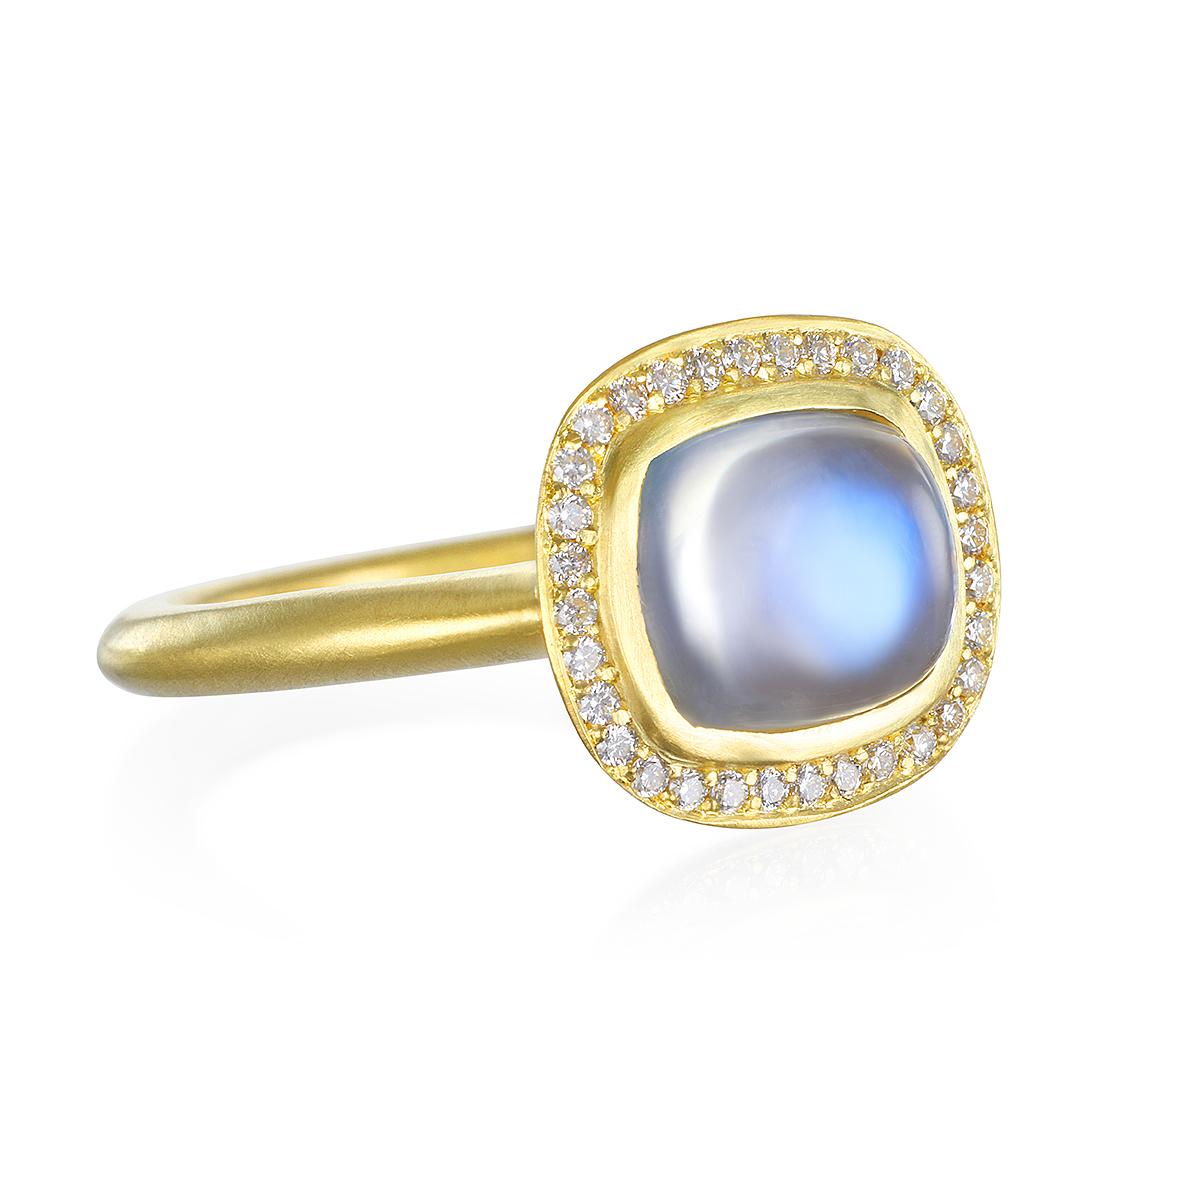 Dieser wunderschöne Mondstein-Ring ist lichtdurchflutet und reflektiert wunderschöne durchscheinende Blautöne. Die Form, der Schliff und das matte Gold verstärken den auffälligen Regenbogeneffekt des Mondsteins. Komplett mit einem Diamant-Halo für